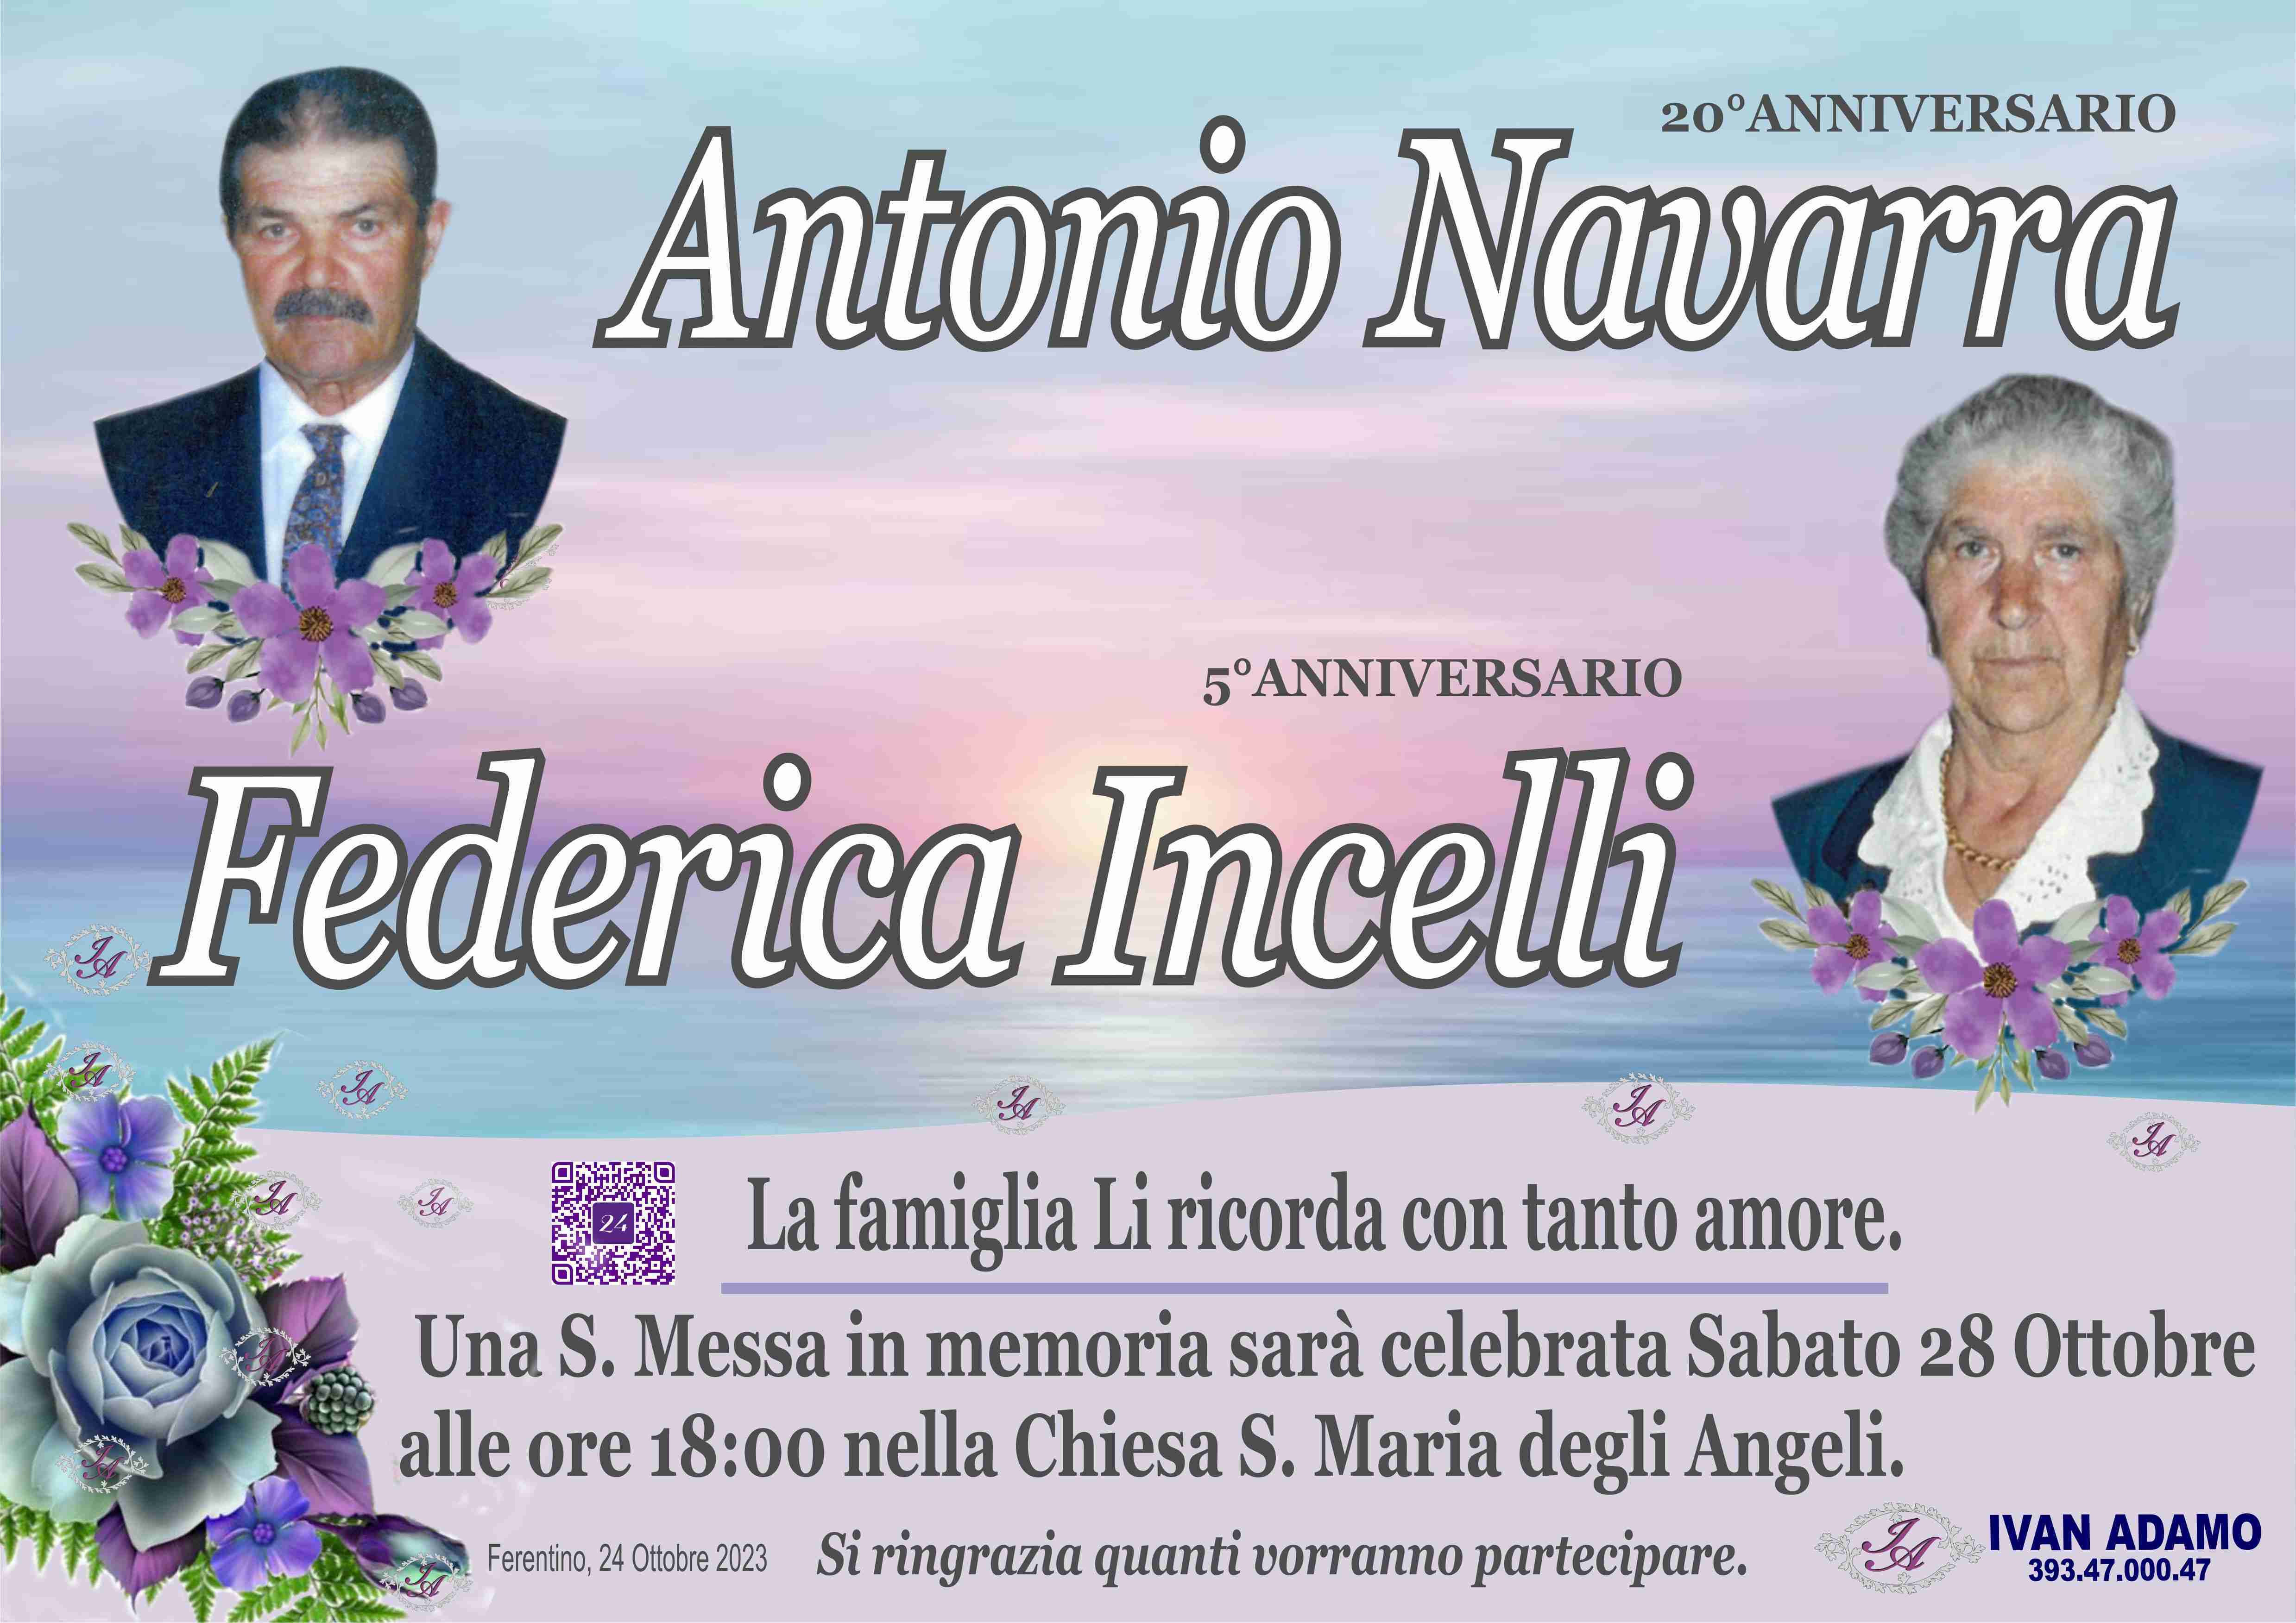 Antonio Navarra e Federica Incelli